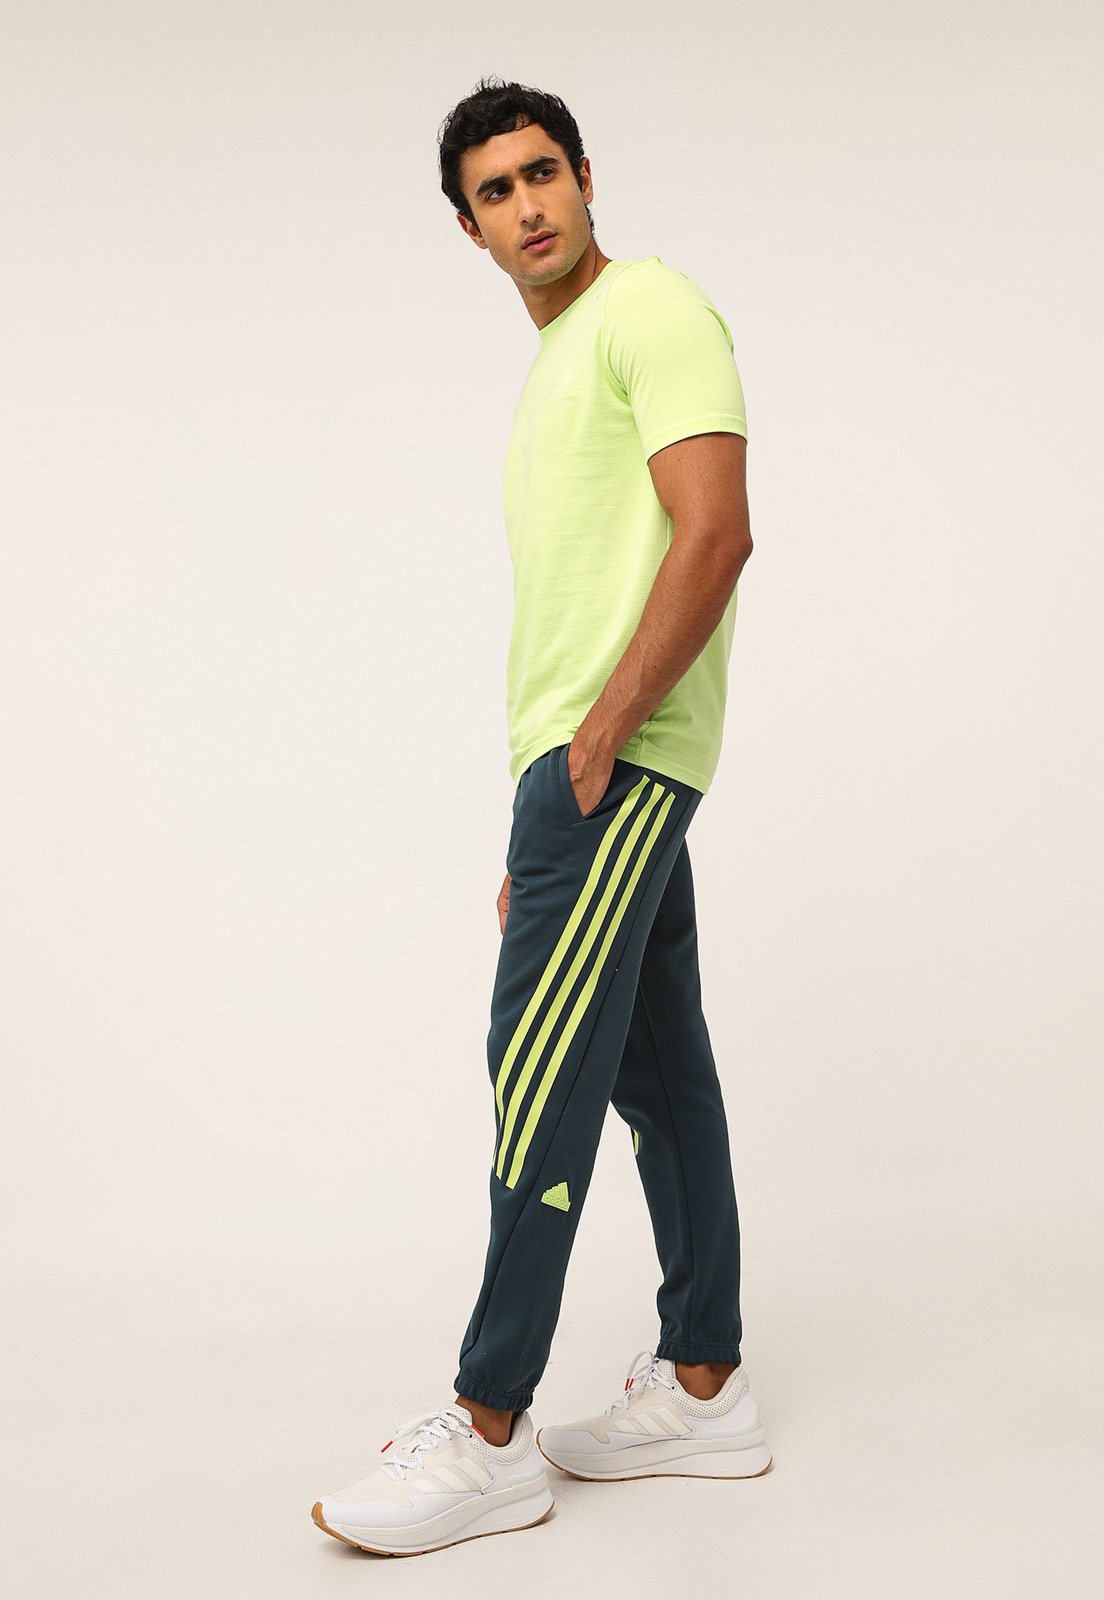 Calça de Moletom Nike Sportswear Jogger Air Flc Branca - Compre Agora